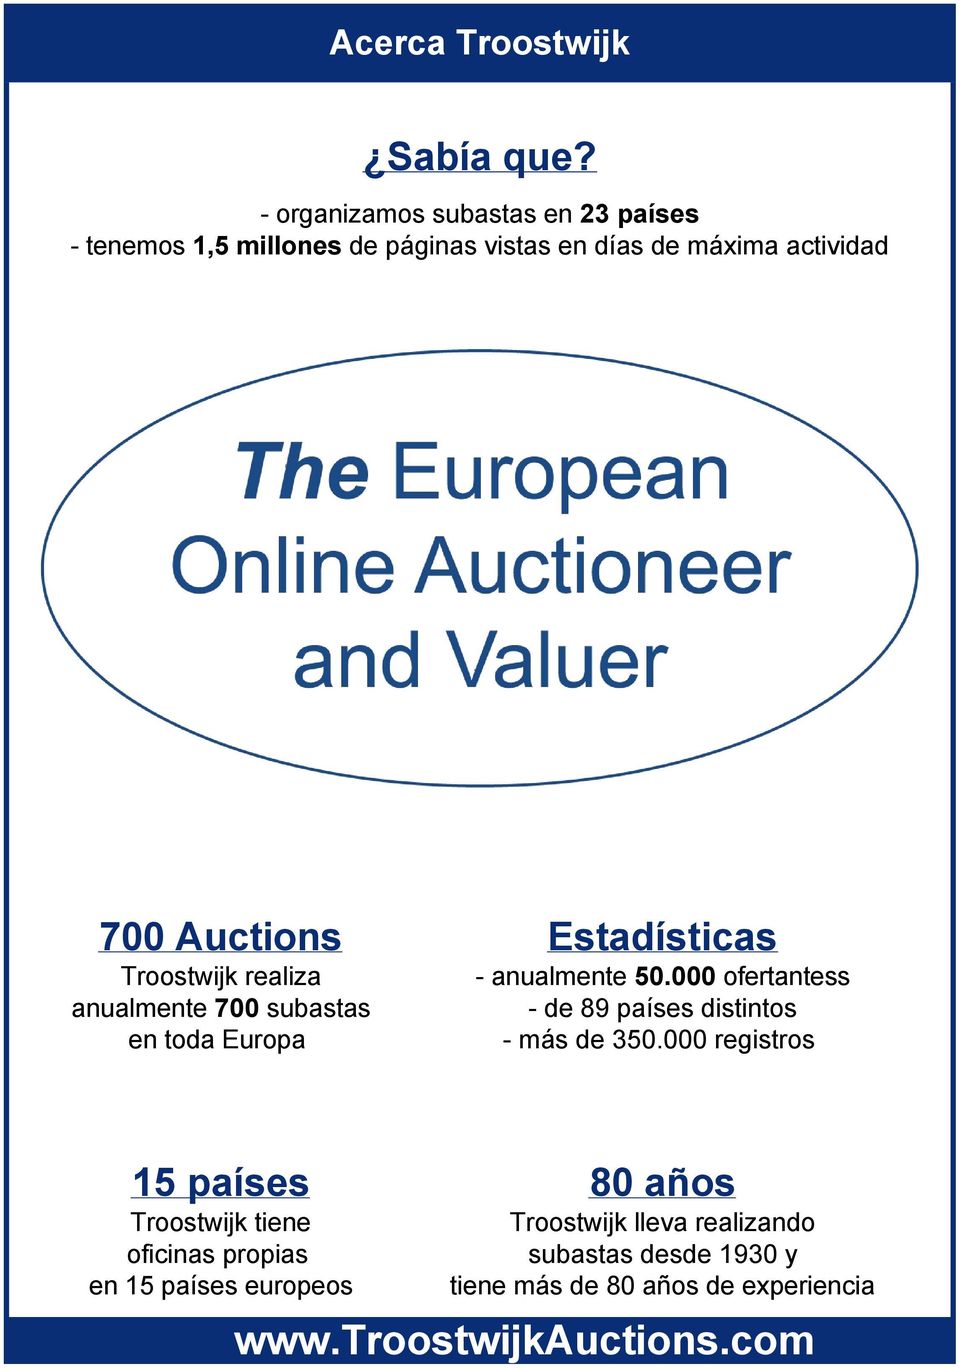 Auctions Troostwijk realiza anualmente 700 subastas en toda Europa Estadísticas anualmente 50.